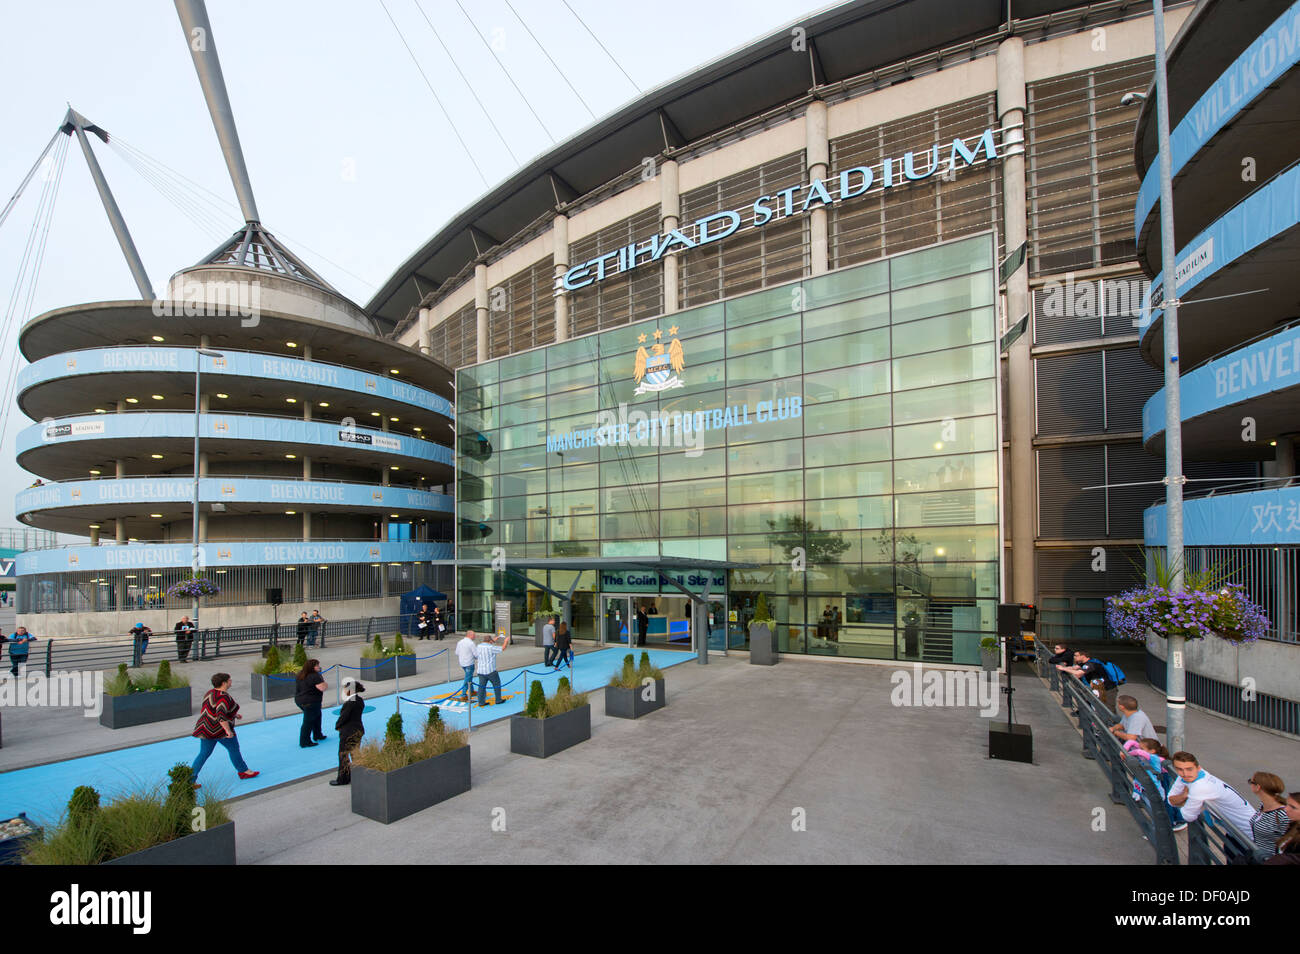 Una vista esterna dell'Etihad Stadium, casa del Manchester City Football Club (solo uso editoriale). Foto Stock